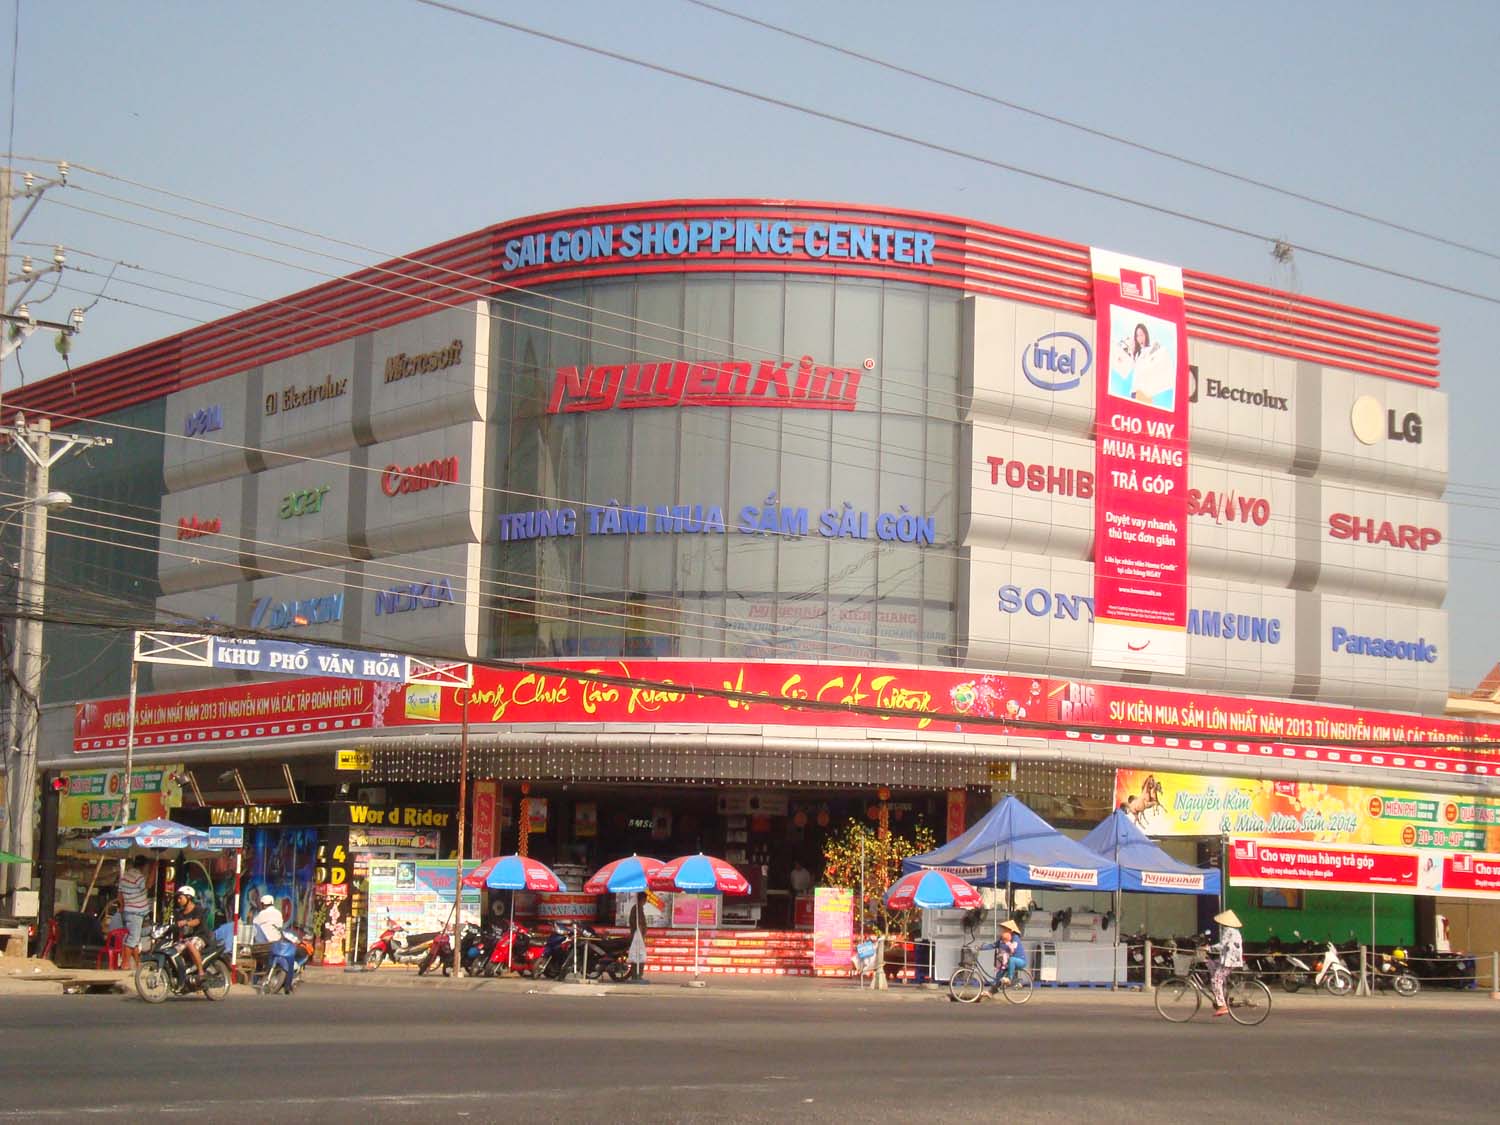 Trung tâm Nguyễn Kim Rạch Giá